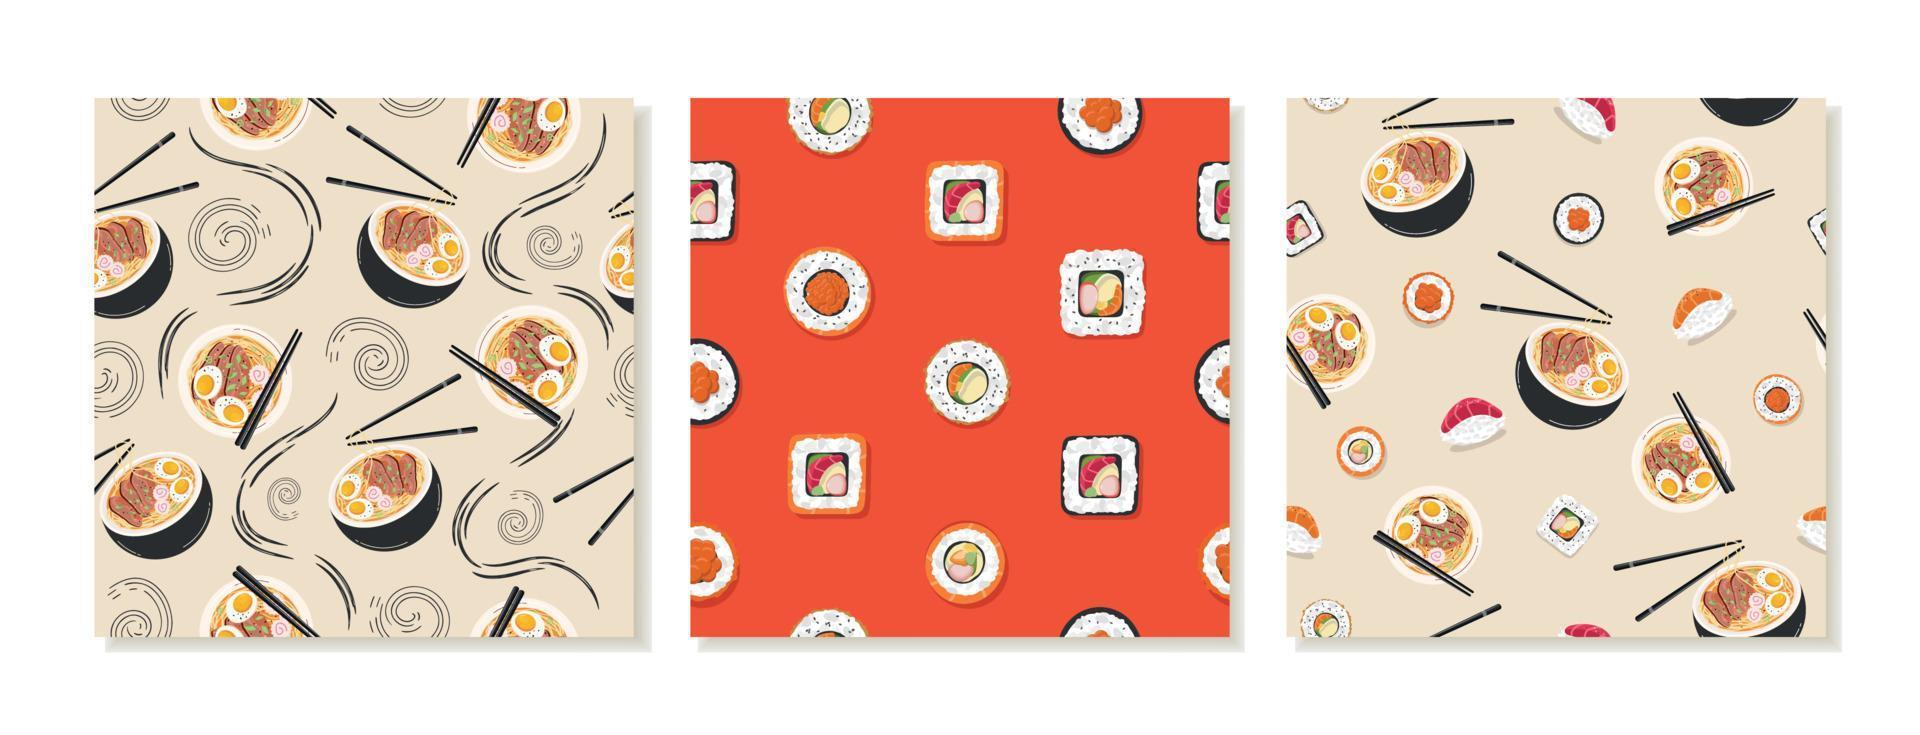 modèles d'arrière-plan carrés avec des modèles de médias sociaux transparents pour les restaurants japonais asiatiques. cuisine asiatique, petits pains, ramen. vecteur